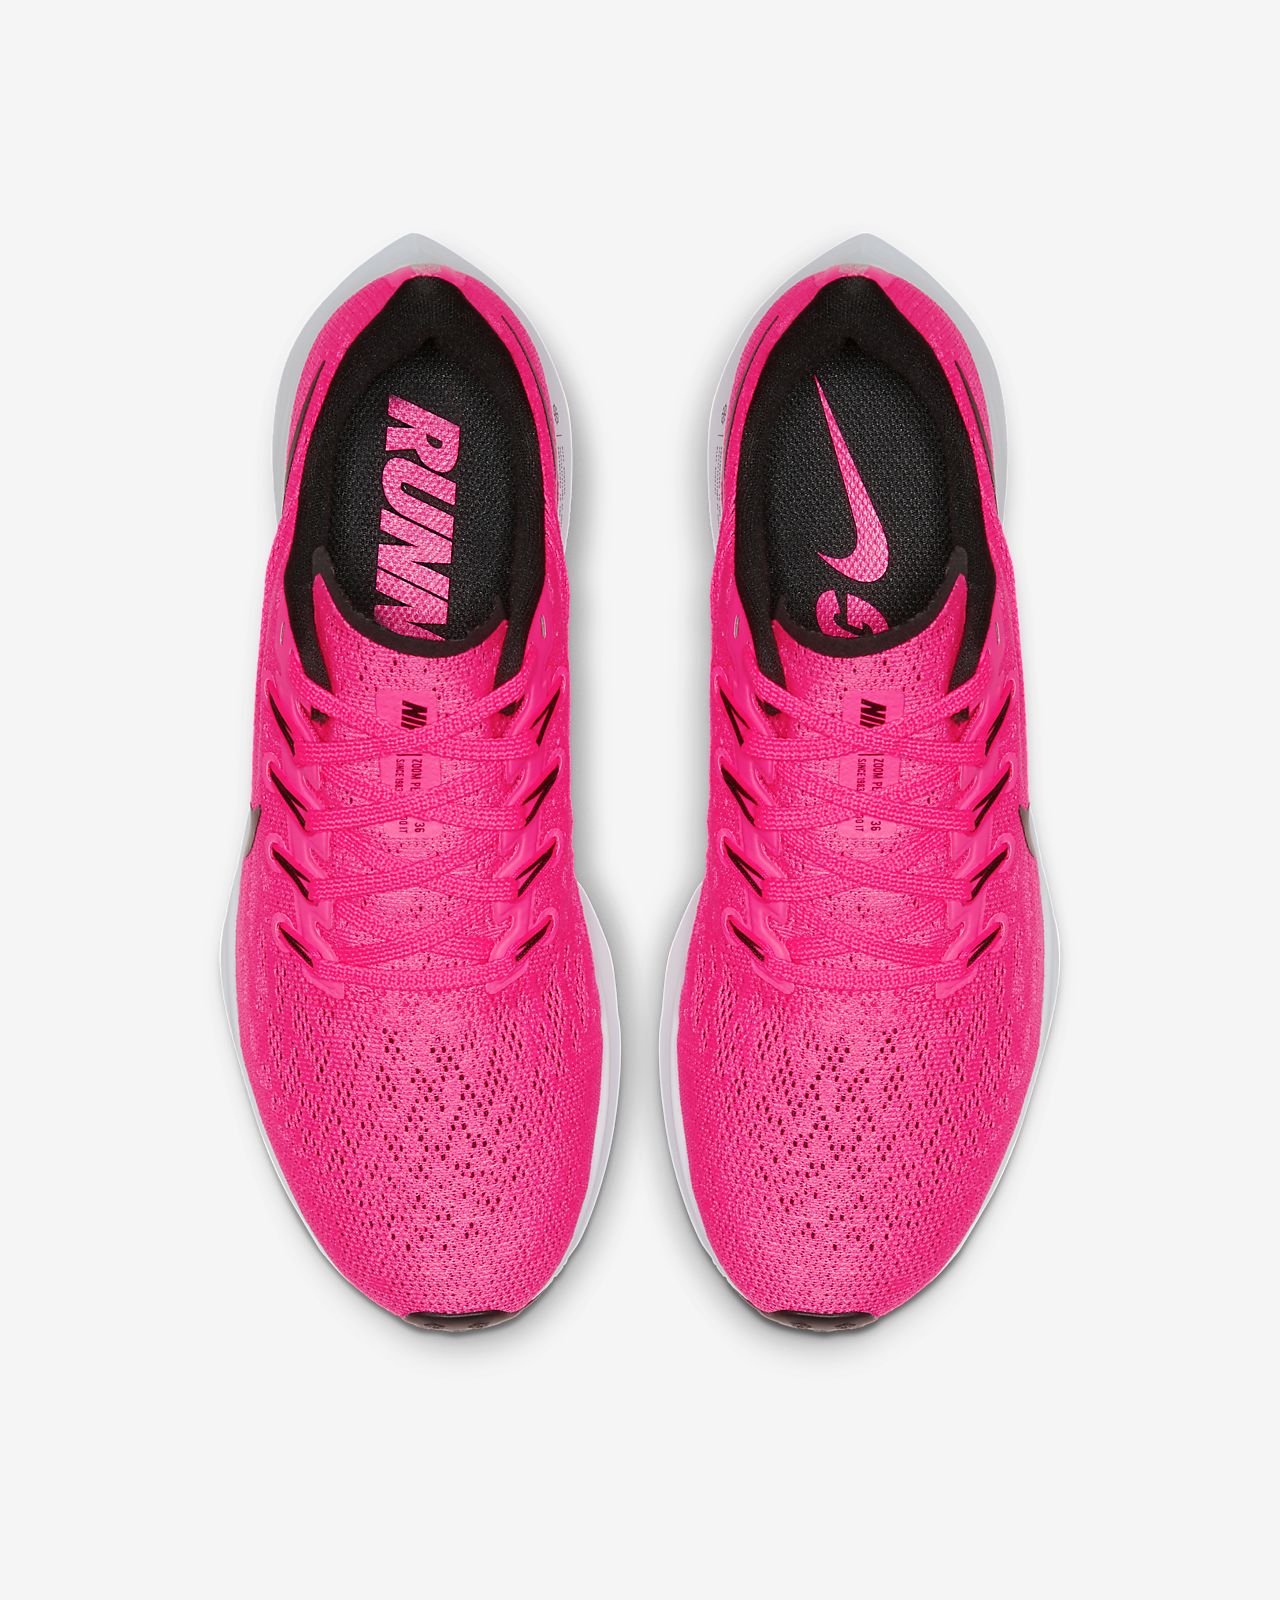 women's pink nike tennis shoes